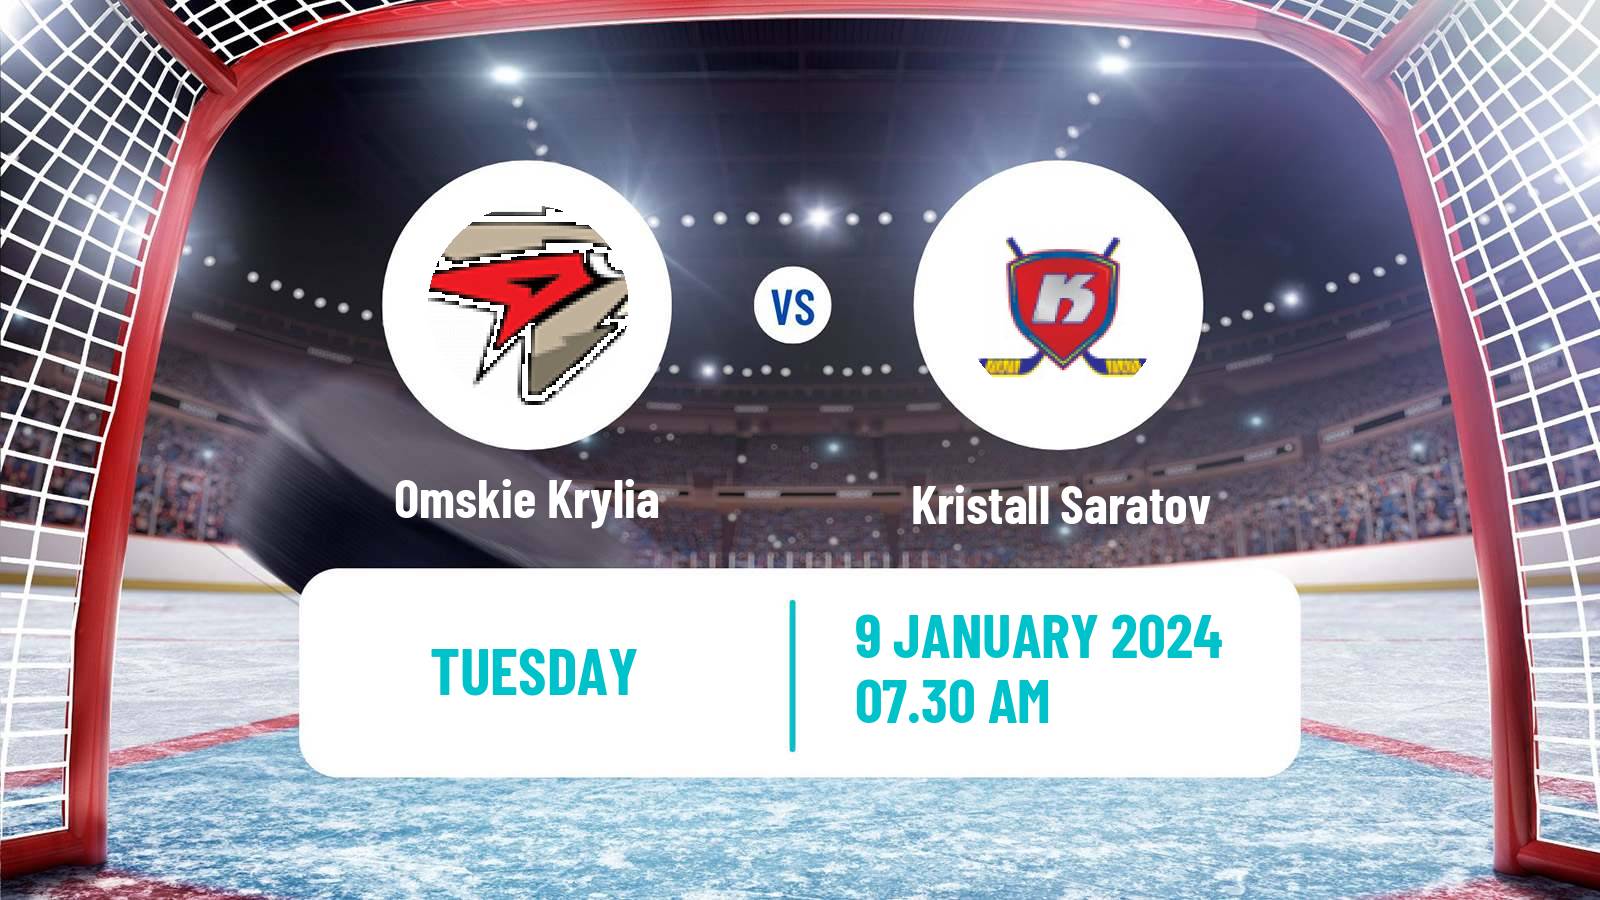 Hockey VHL Omskie Krylia - Kristall Saratov